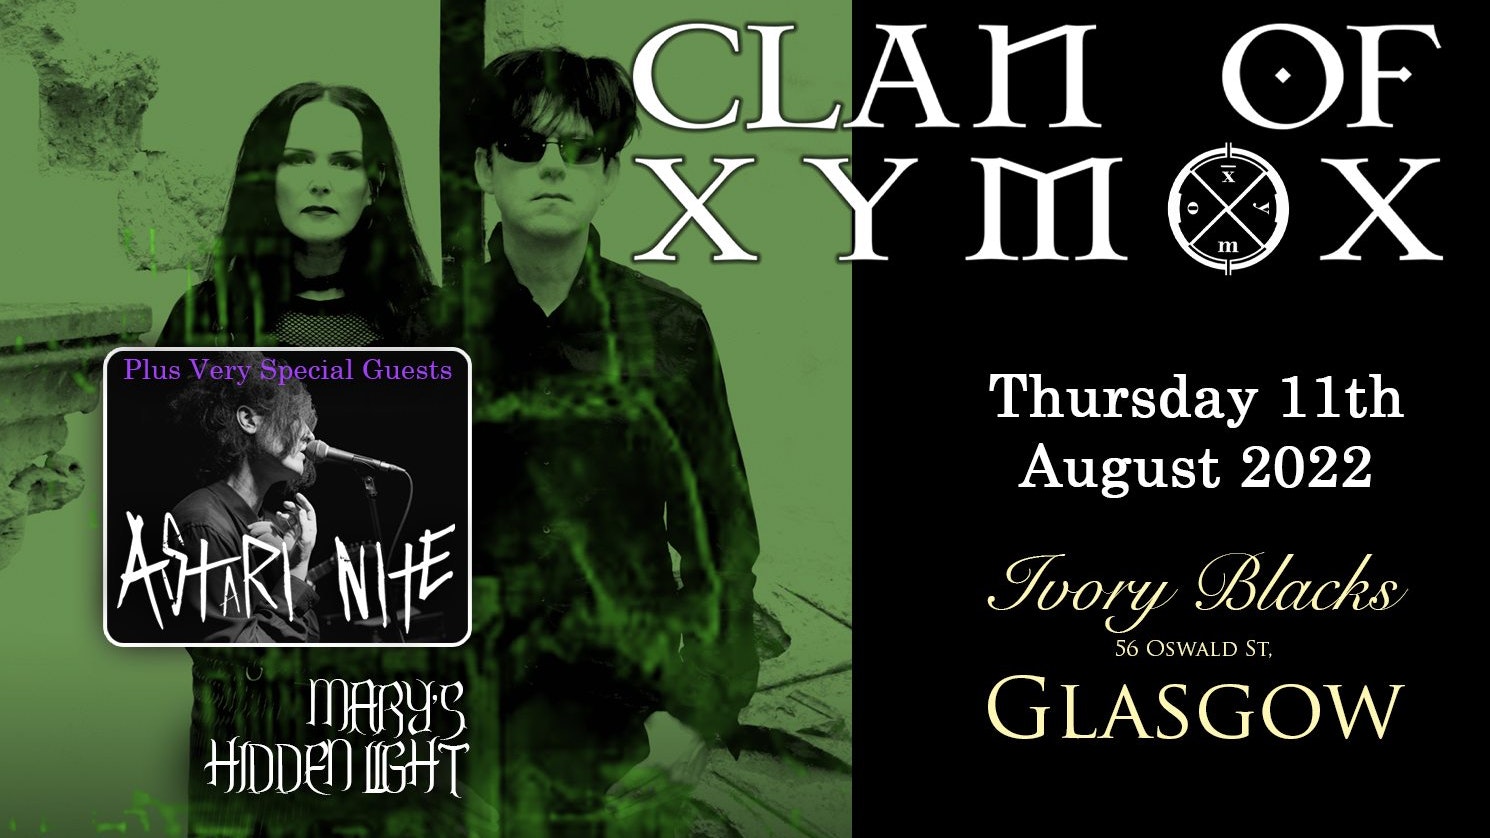 CLAN OF XYMOX  – 40th Anniversary UK Tour + Astari Nite & Mary’s Hidden Light